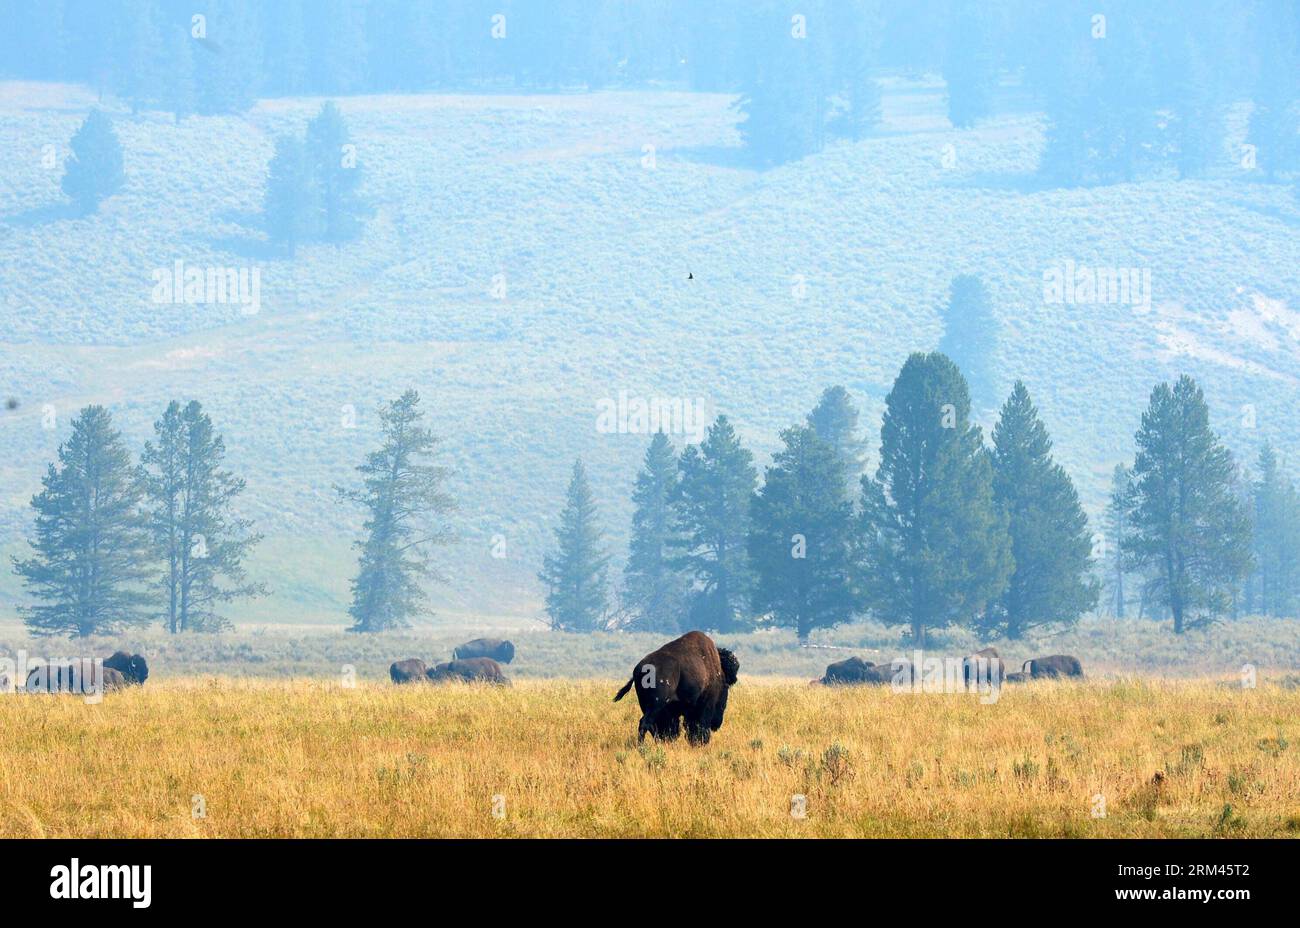 Grandi mandrie di bufali pascolano vicino al lago Yellowstone nel parco nazionale di Yellowstone, Stati Uniti, il 17 agosto 2013. Fondato nel 1872, Yellowstone è stato il primo parco nazionale al mondo ed è noto per la sua fauna selvatica e le sue numerose caratteristiche geotermiche. (Xinhua/Wang lei) PARCO NAZIONALE US-YELLOWSTONE-SCENARIO PUBLICATIONxNOTxINxCHN Foto Stock